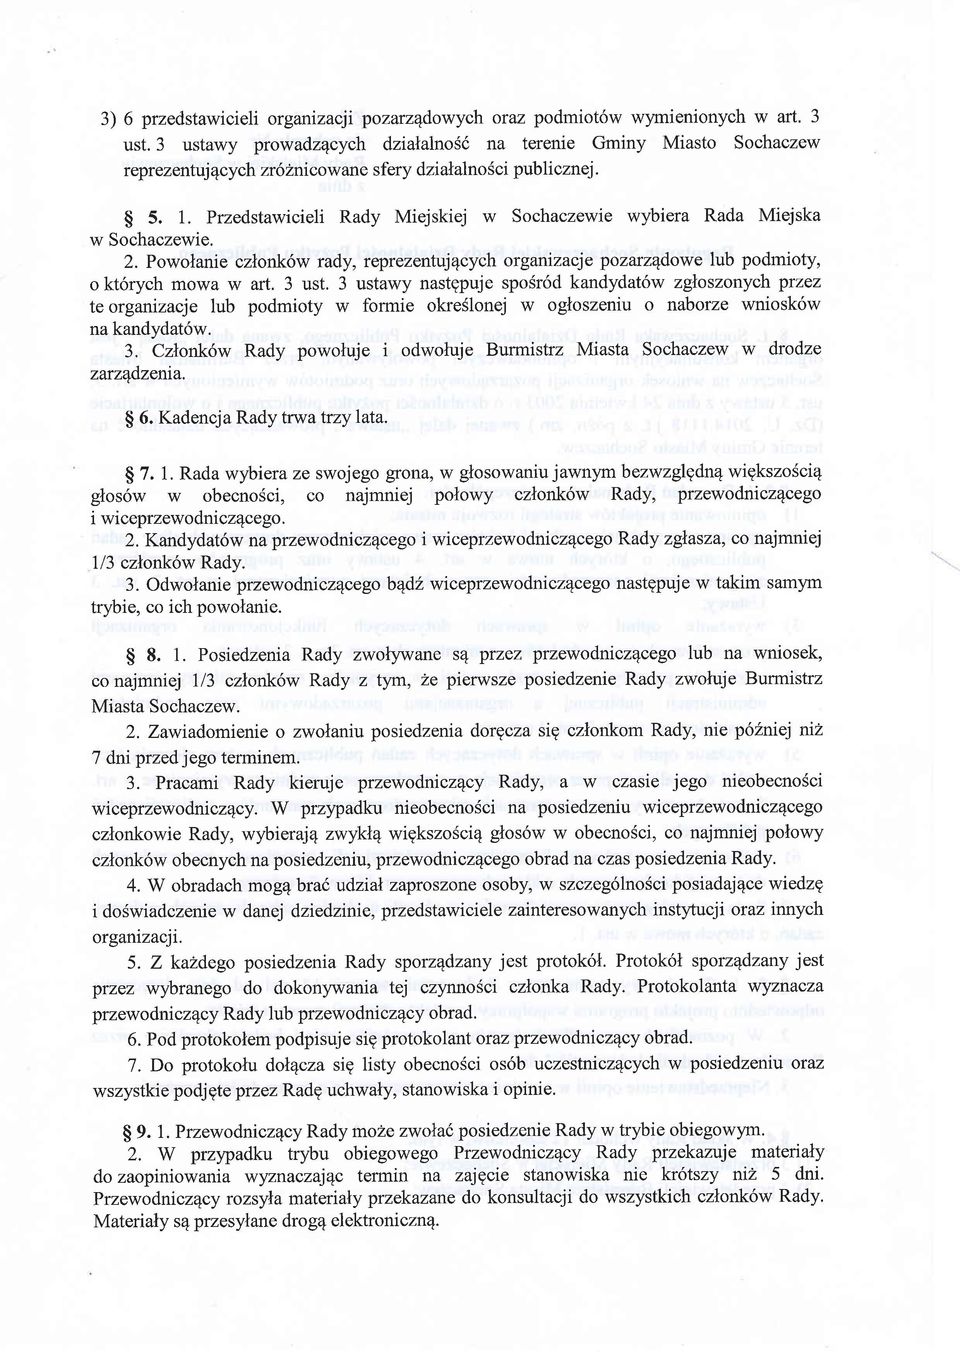 Przedstawicieli Rady Miejskiej w Sochaczewie wybiera Rada Miejska w Sochaczewie. 2. Powolanie czlonk6w rady, reprezentt4qcych organizacje pozarzedowe lub podmioty, o kt6rych mowa w art. 3 ust.